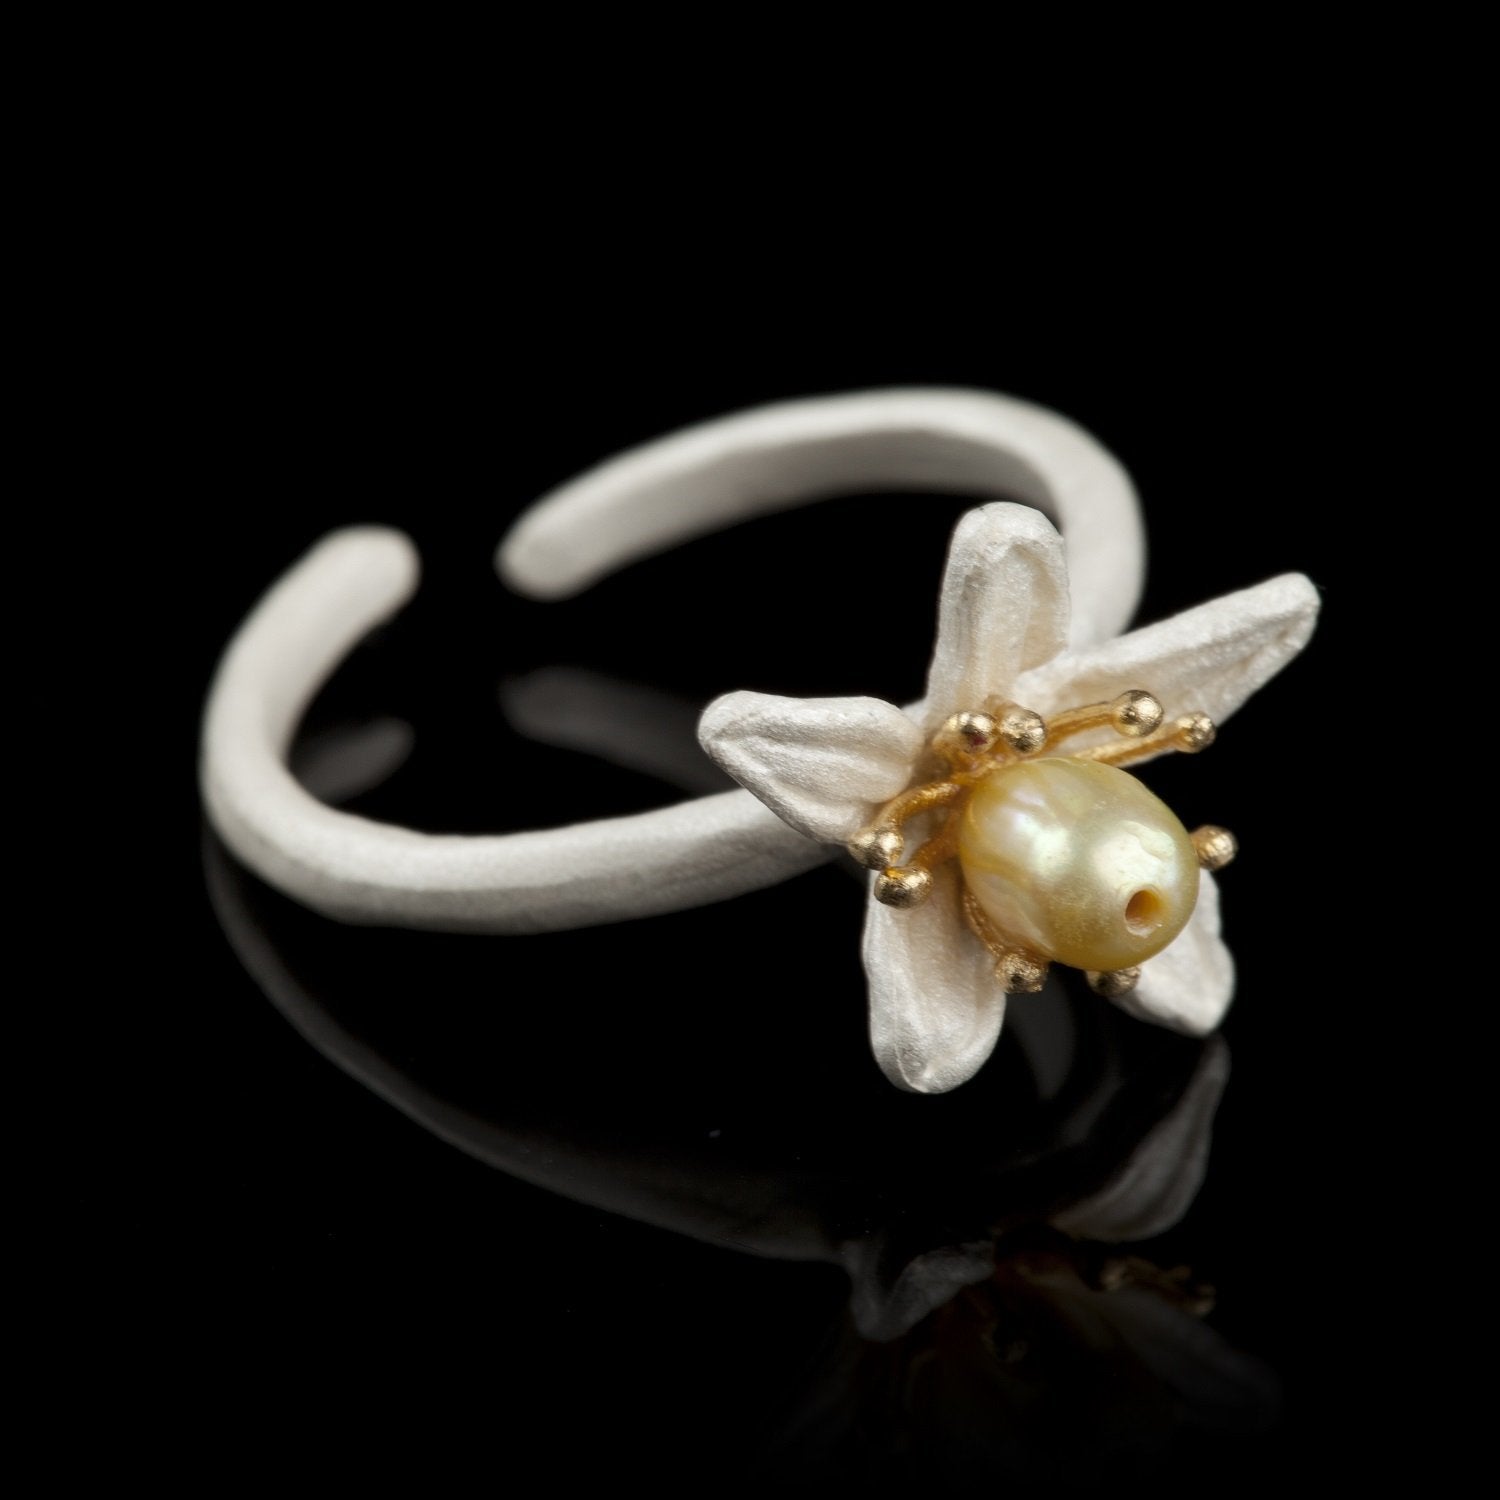 Orange Blossom Ring - Single Flower